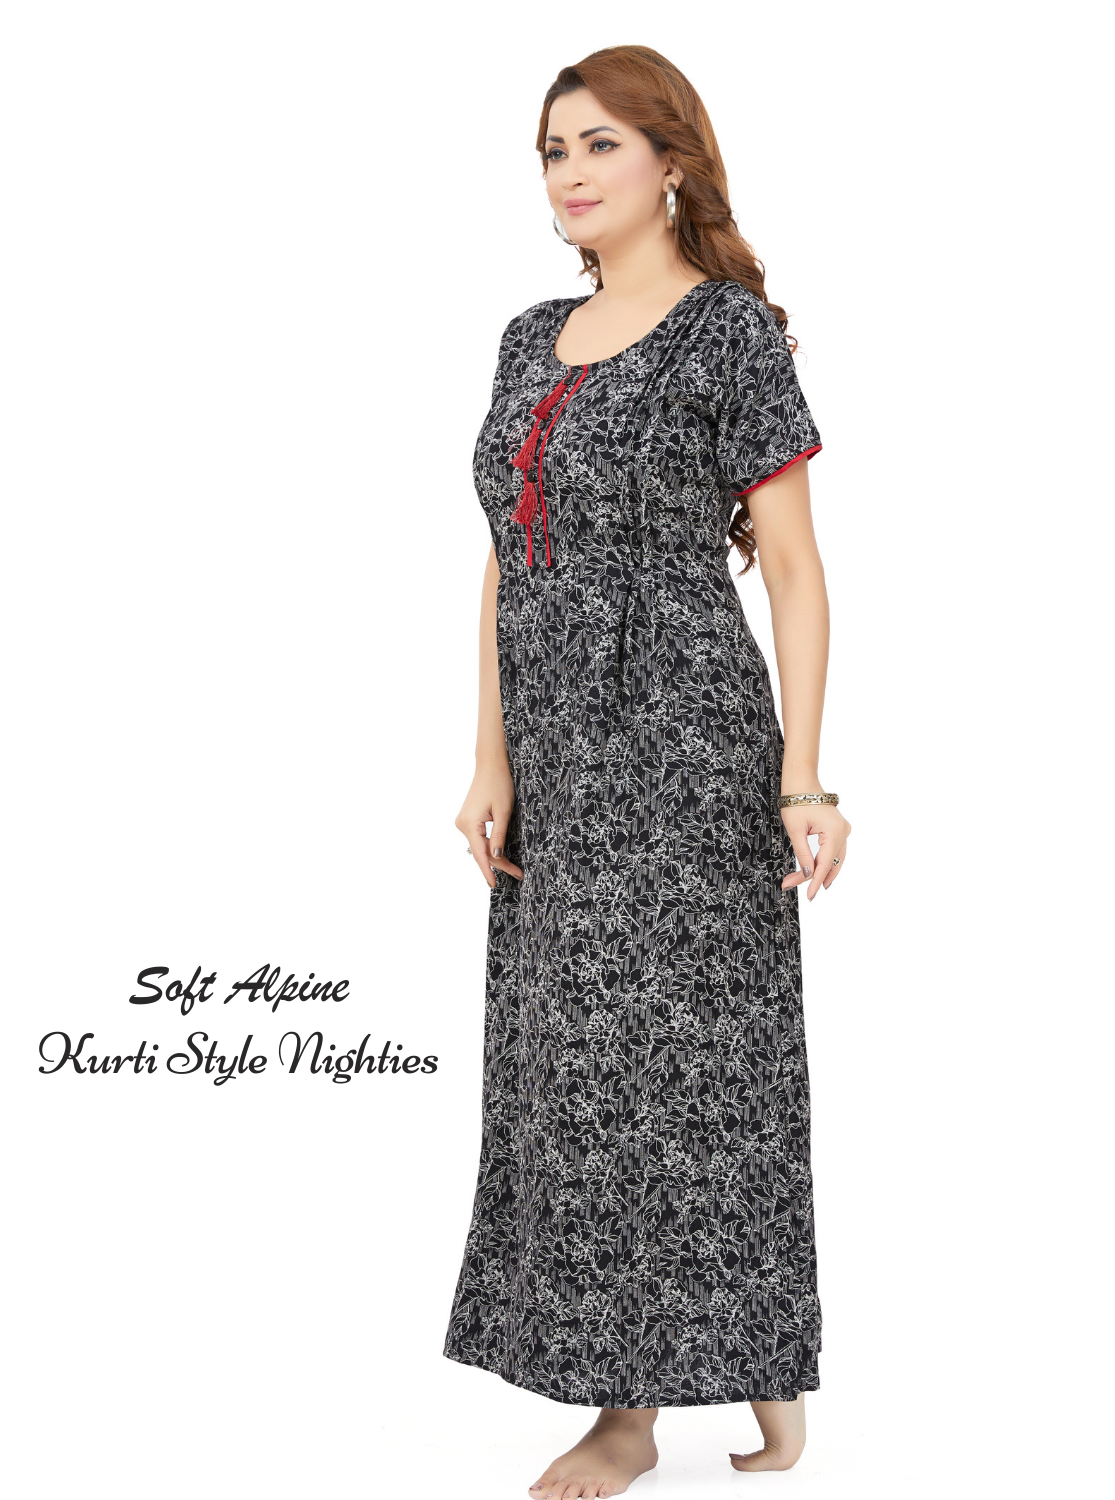 MANGAI Stylish Alpine KURTI Style | Beautiful Stylish KURTI Model | New Collection's for Stylish Women's